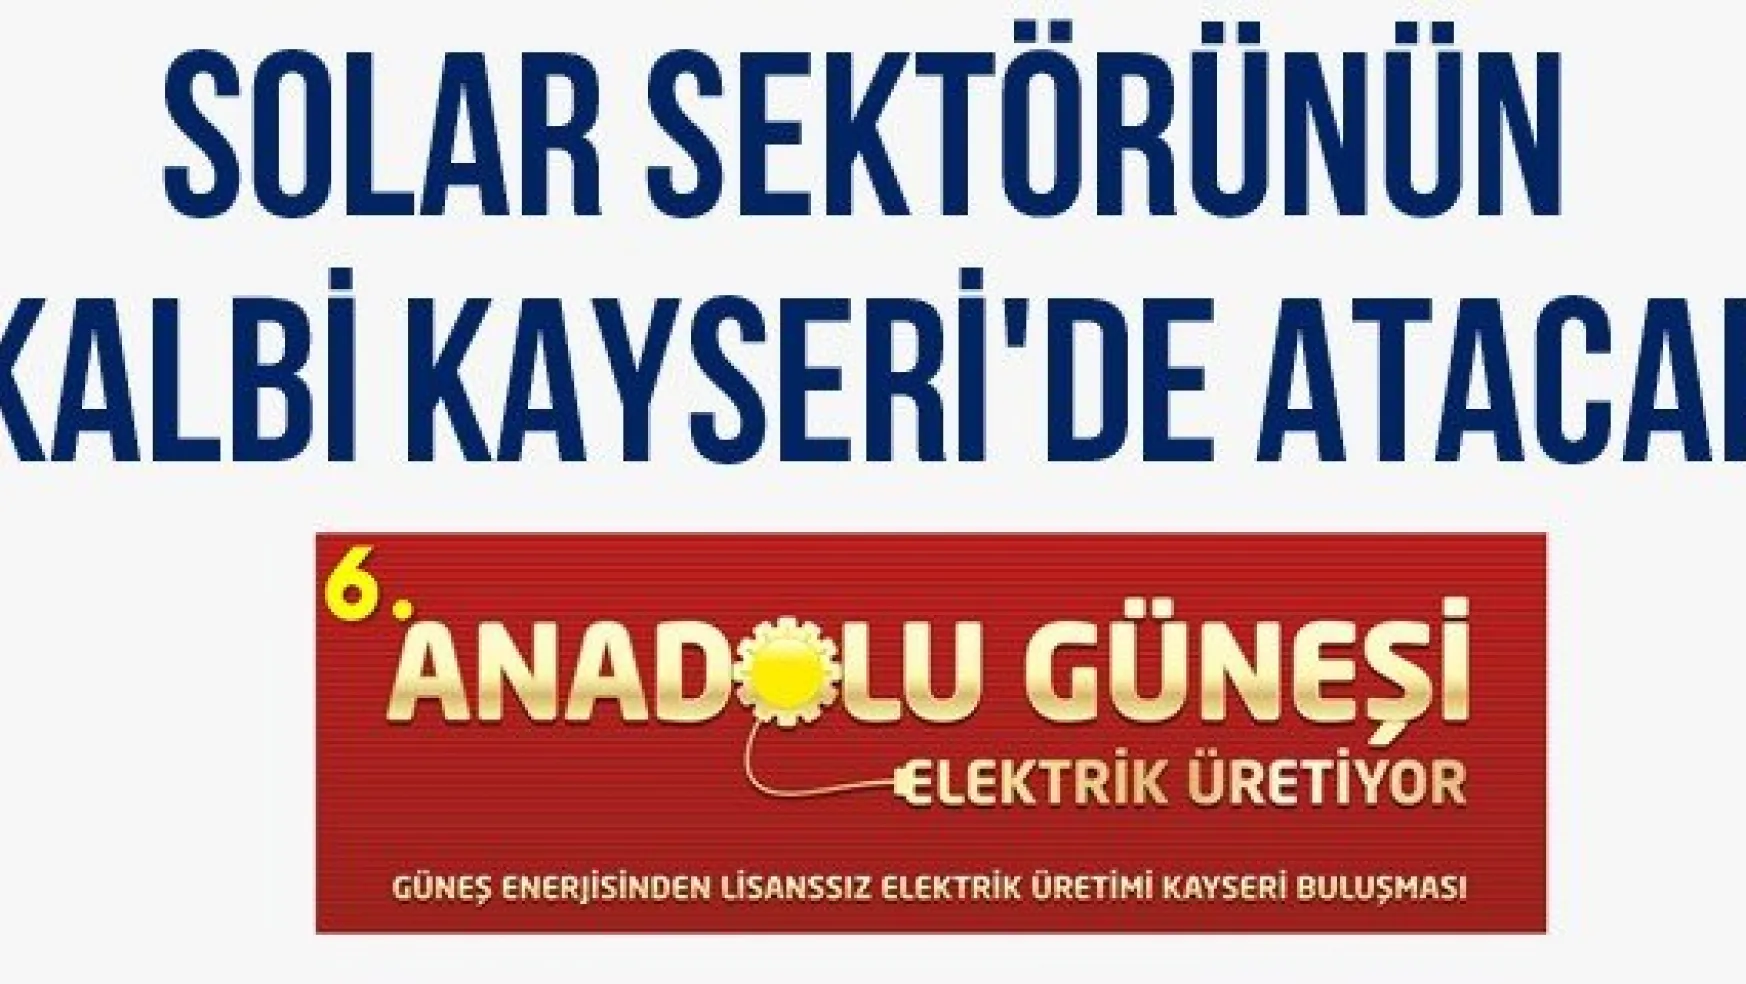 Solar sektörünün kalbi Kayseri'de atacak